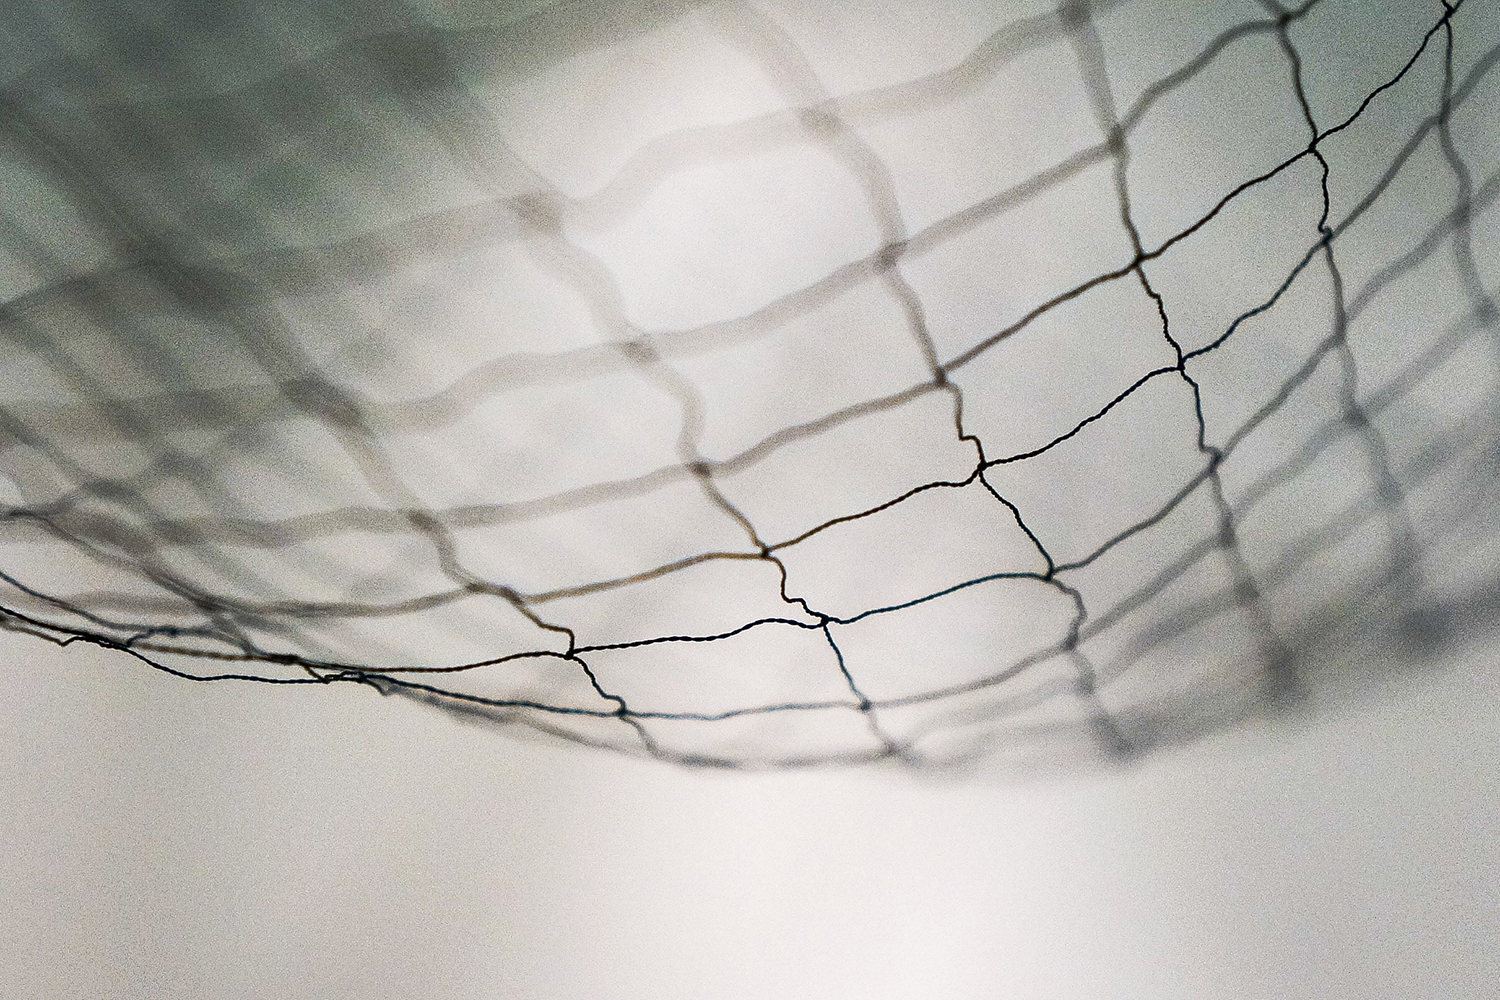 A photo of a net